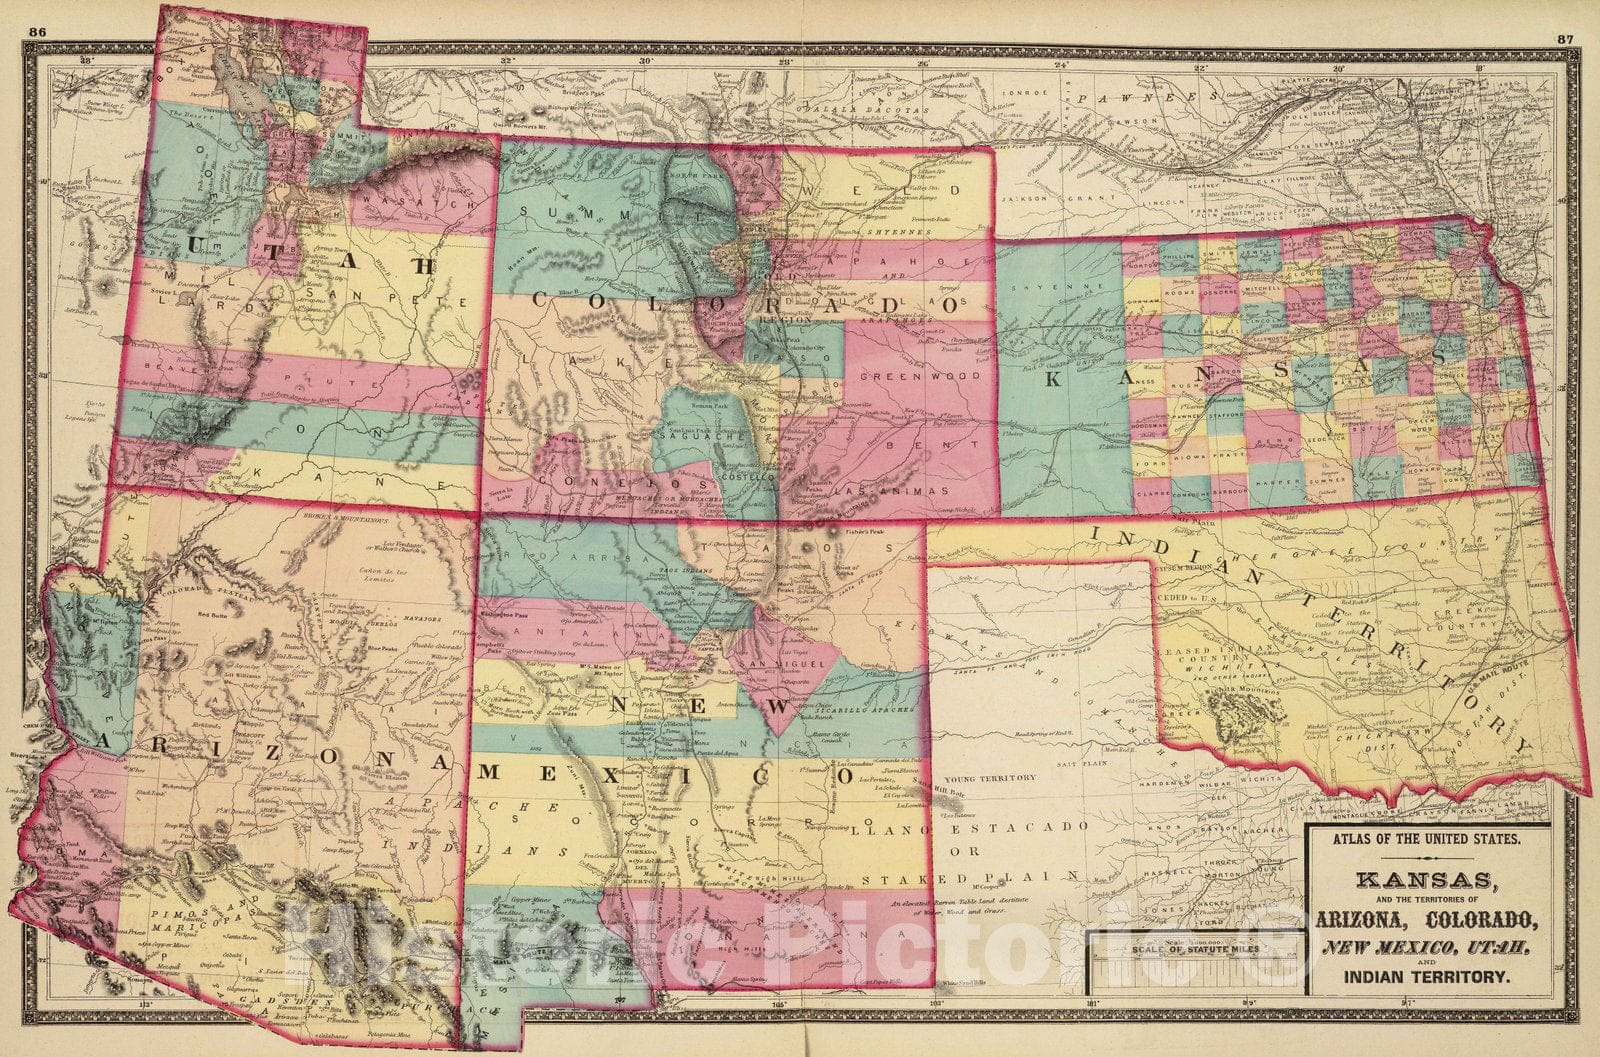 Historic Map : 1872 Kansas, and Arizona, Colorado, New Mexico, Utah, and Indian Territory. - Vintage Wall Art